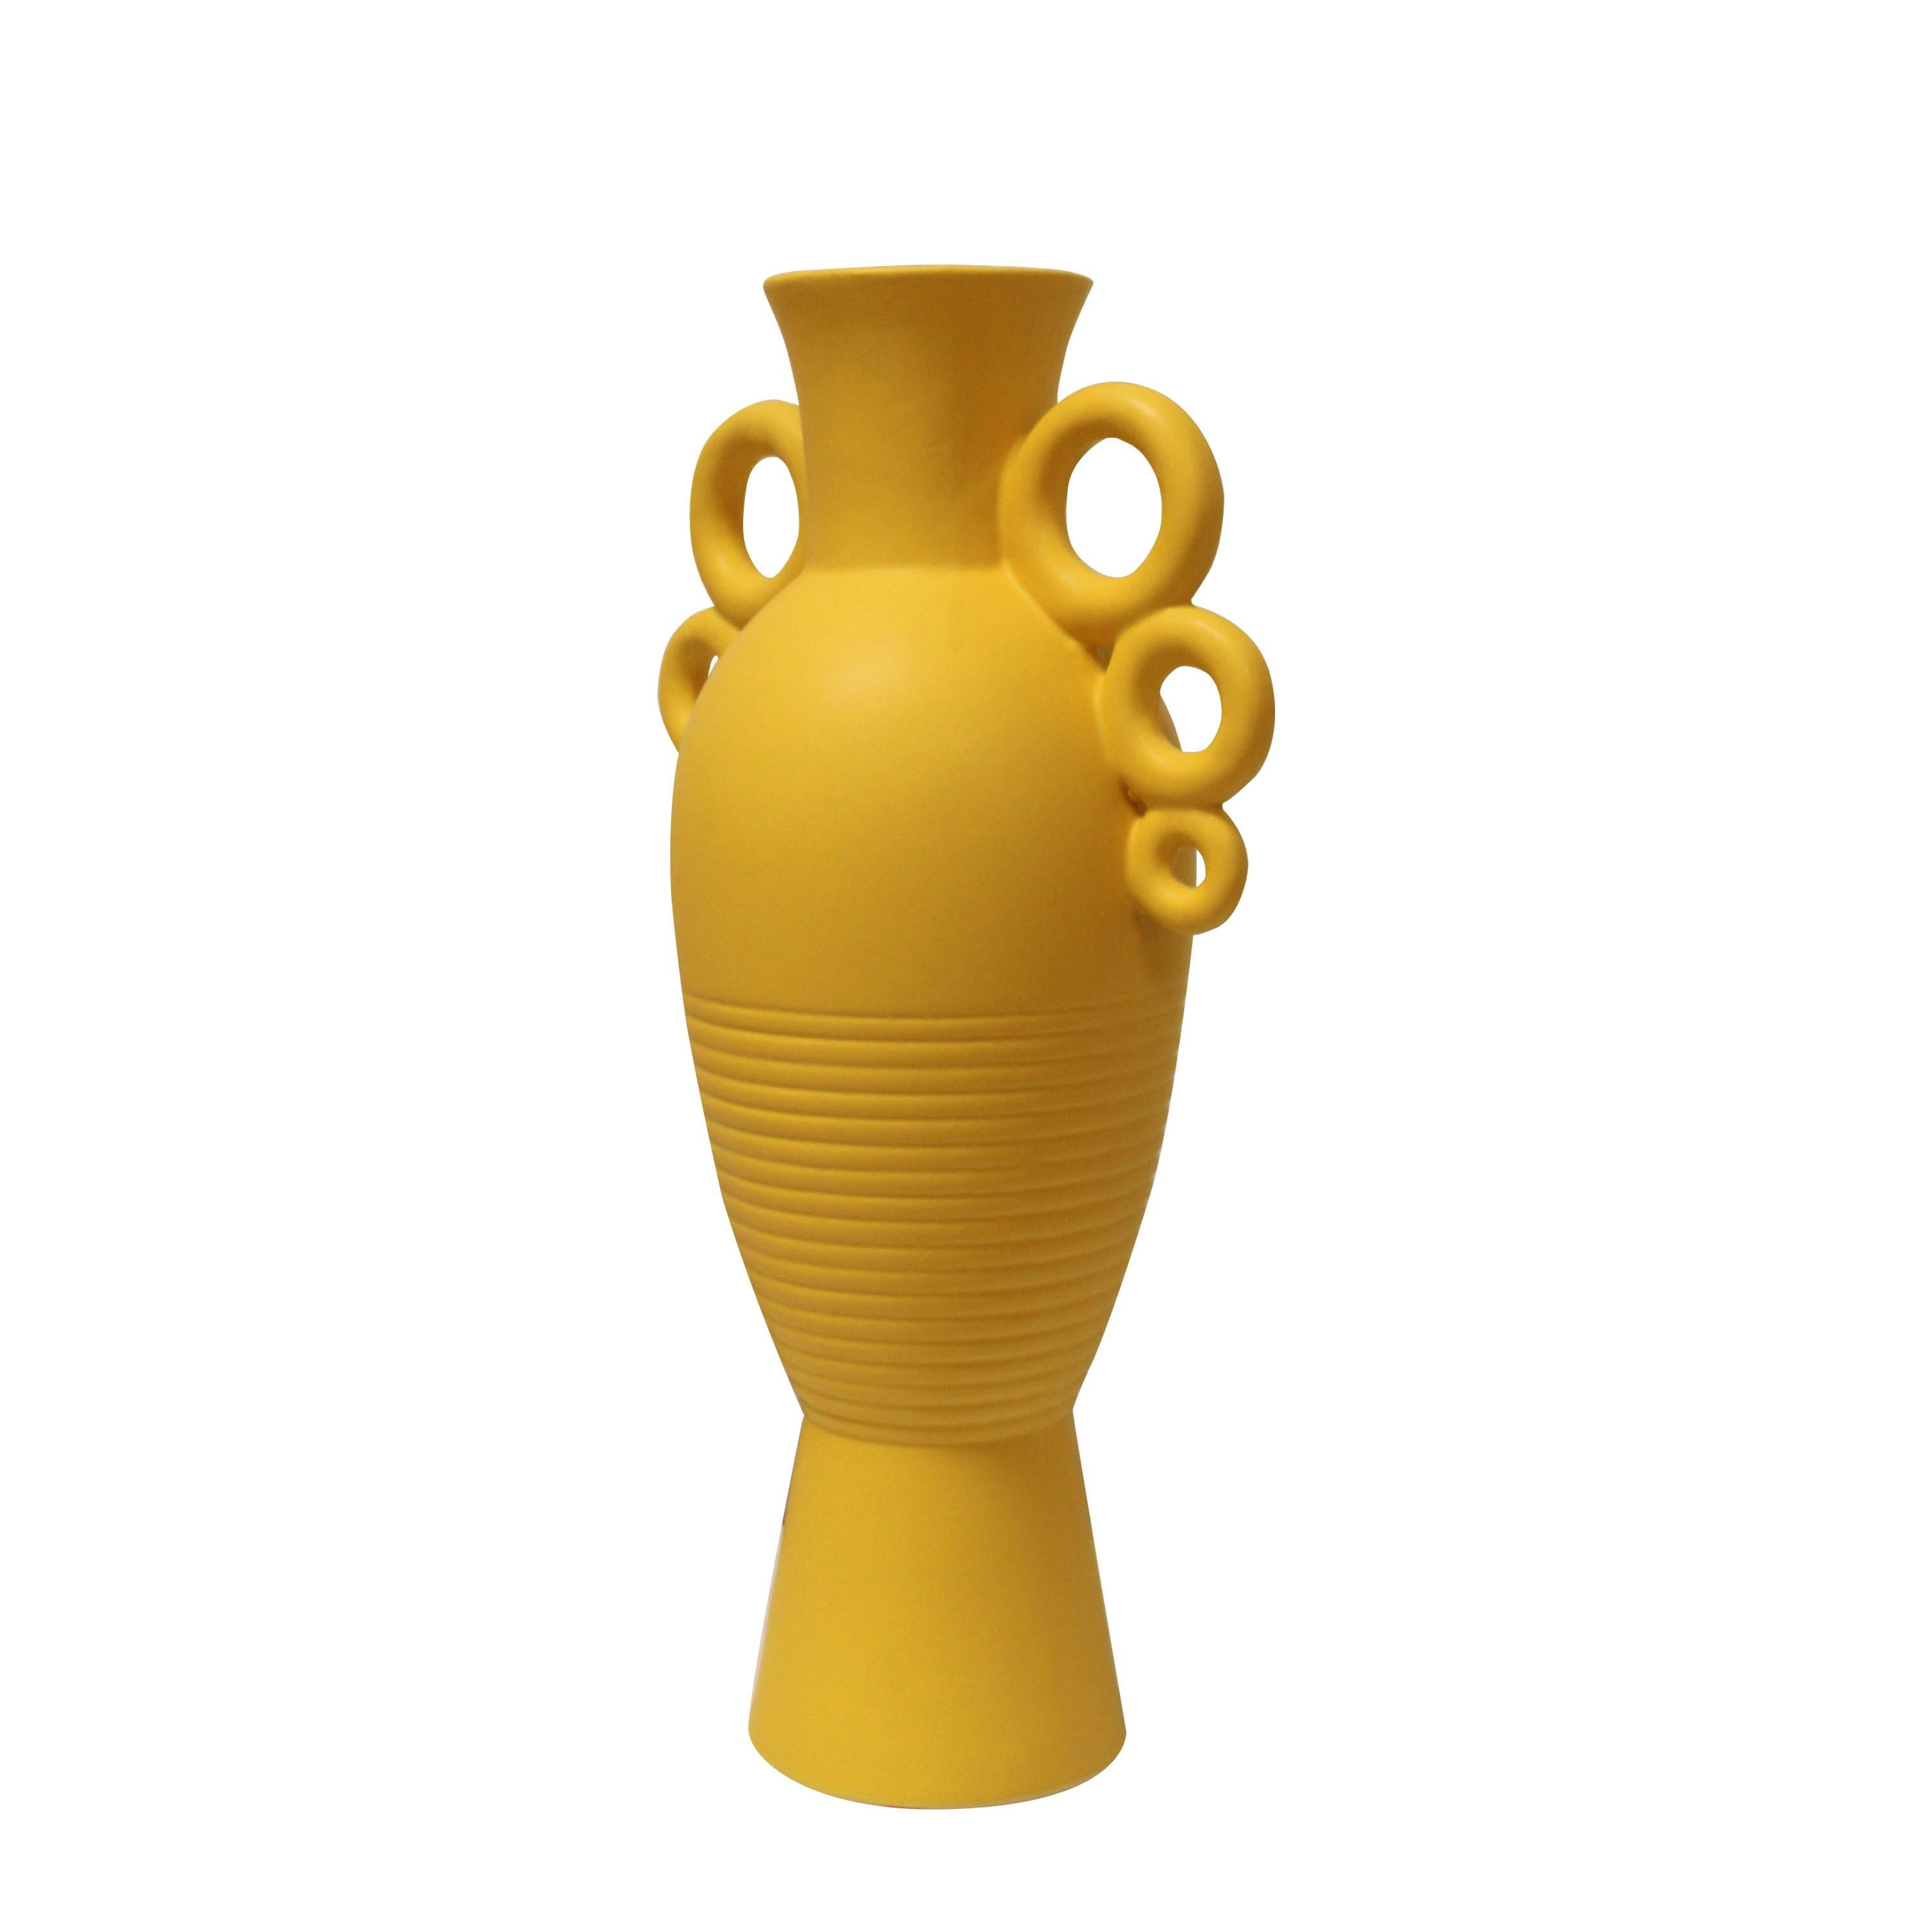 Italienische Keramikvase mit balusterförmigem Korpus und zylindrischem Hals, bemalt mit Ebenholz. Die Vase hat zwei Henkel aus 3 miteinander verbundenen Keramikringen und eine eingravierte Linienverzierung.